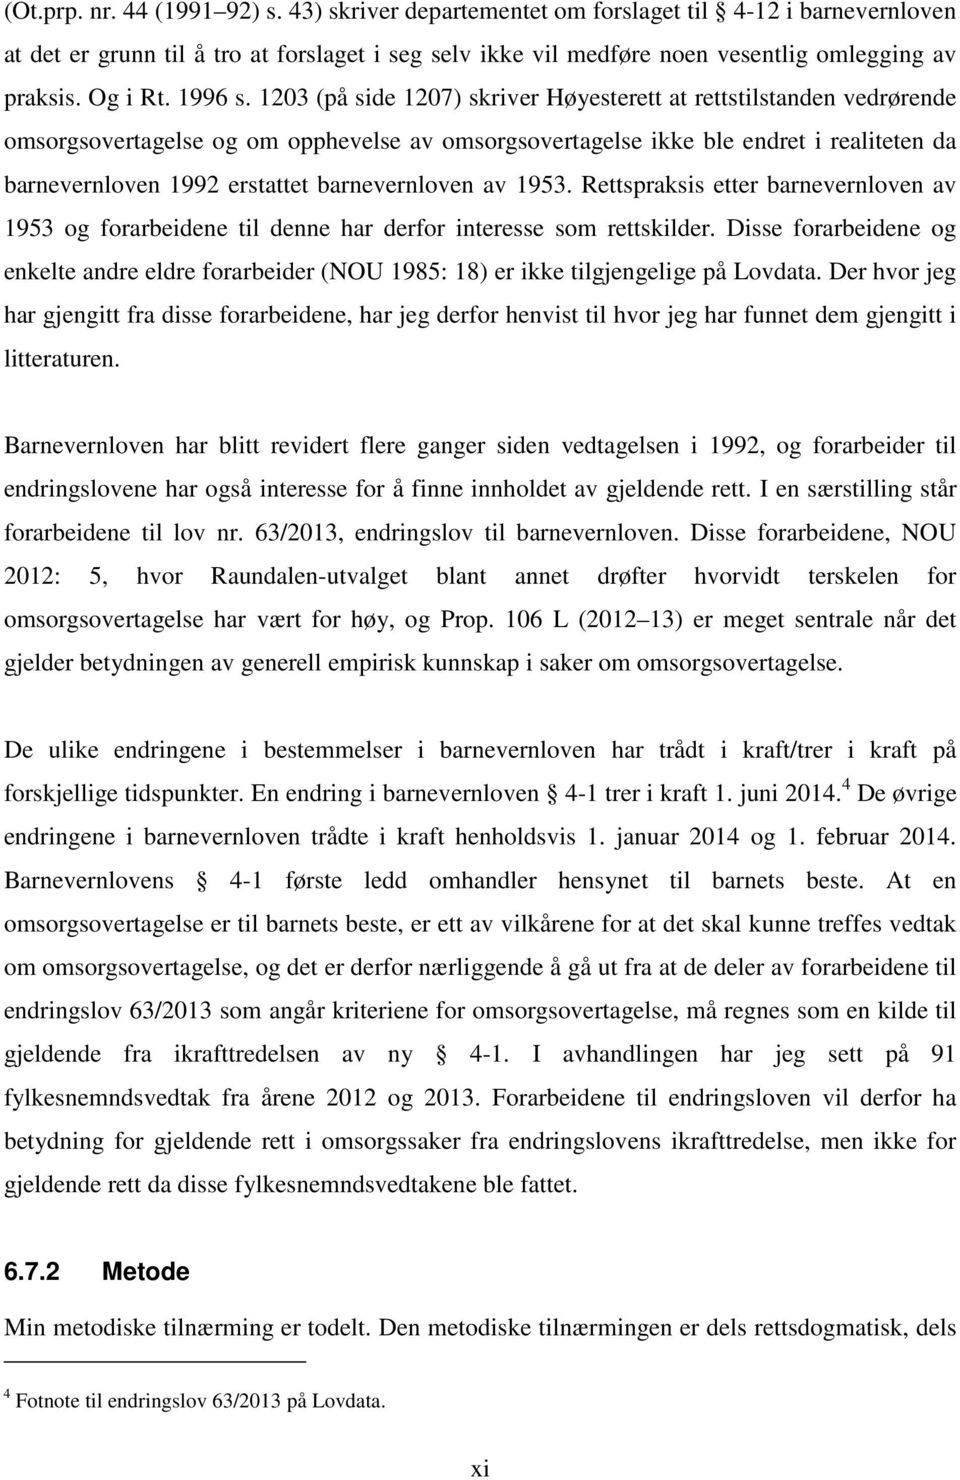 1203 (på side 1207) skriver Høyesterett at rettstilstanden vedrørende omsorgsovertagelse og om opphevelse av omsorgsovertagelse ikke ble endret i realiteten da barnevernloven 1992 erstattet